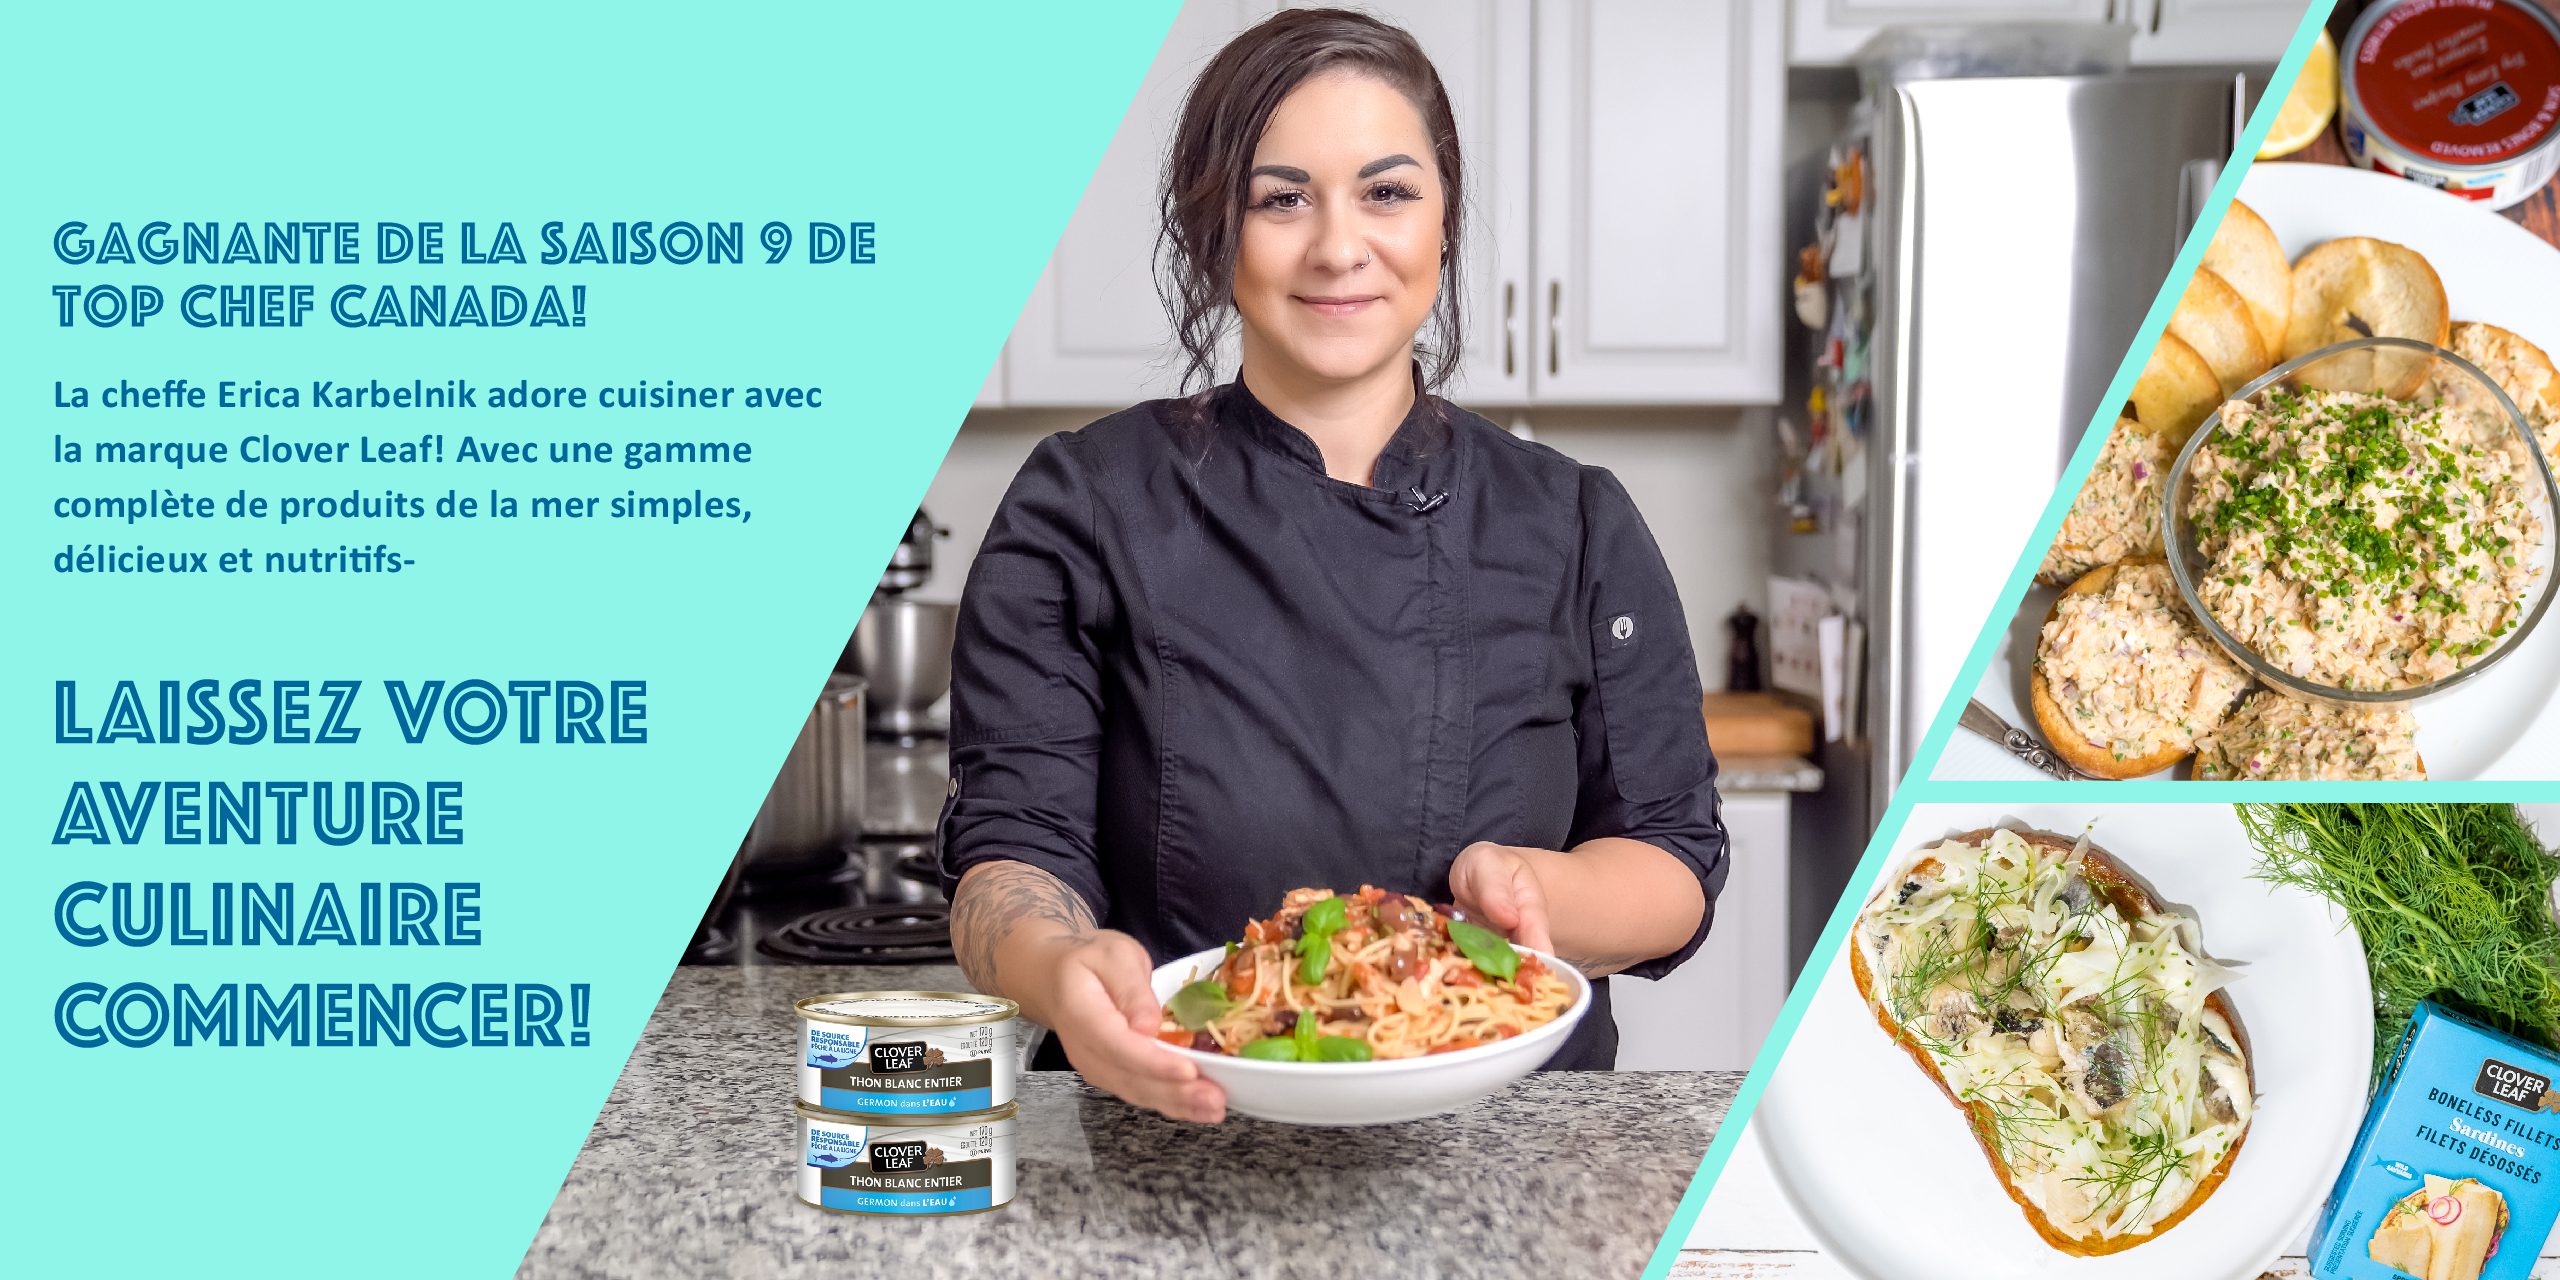 GAGNANTE DE LA SAISON 9 DE TOP CHEF CANADA! La cheffe Erica Karbelnik adore cuisiner avec la marque Clover Leaf! Avec une gamme complète de produits de la mer simples, délicieux et nutritifs, LAISSEZ VOTRE AVENTURE CULINAIRE COMMENCER!